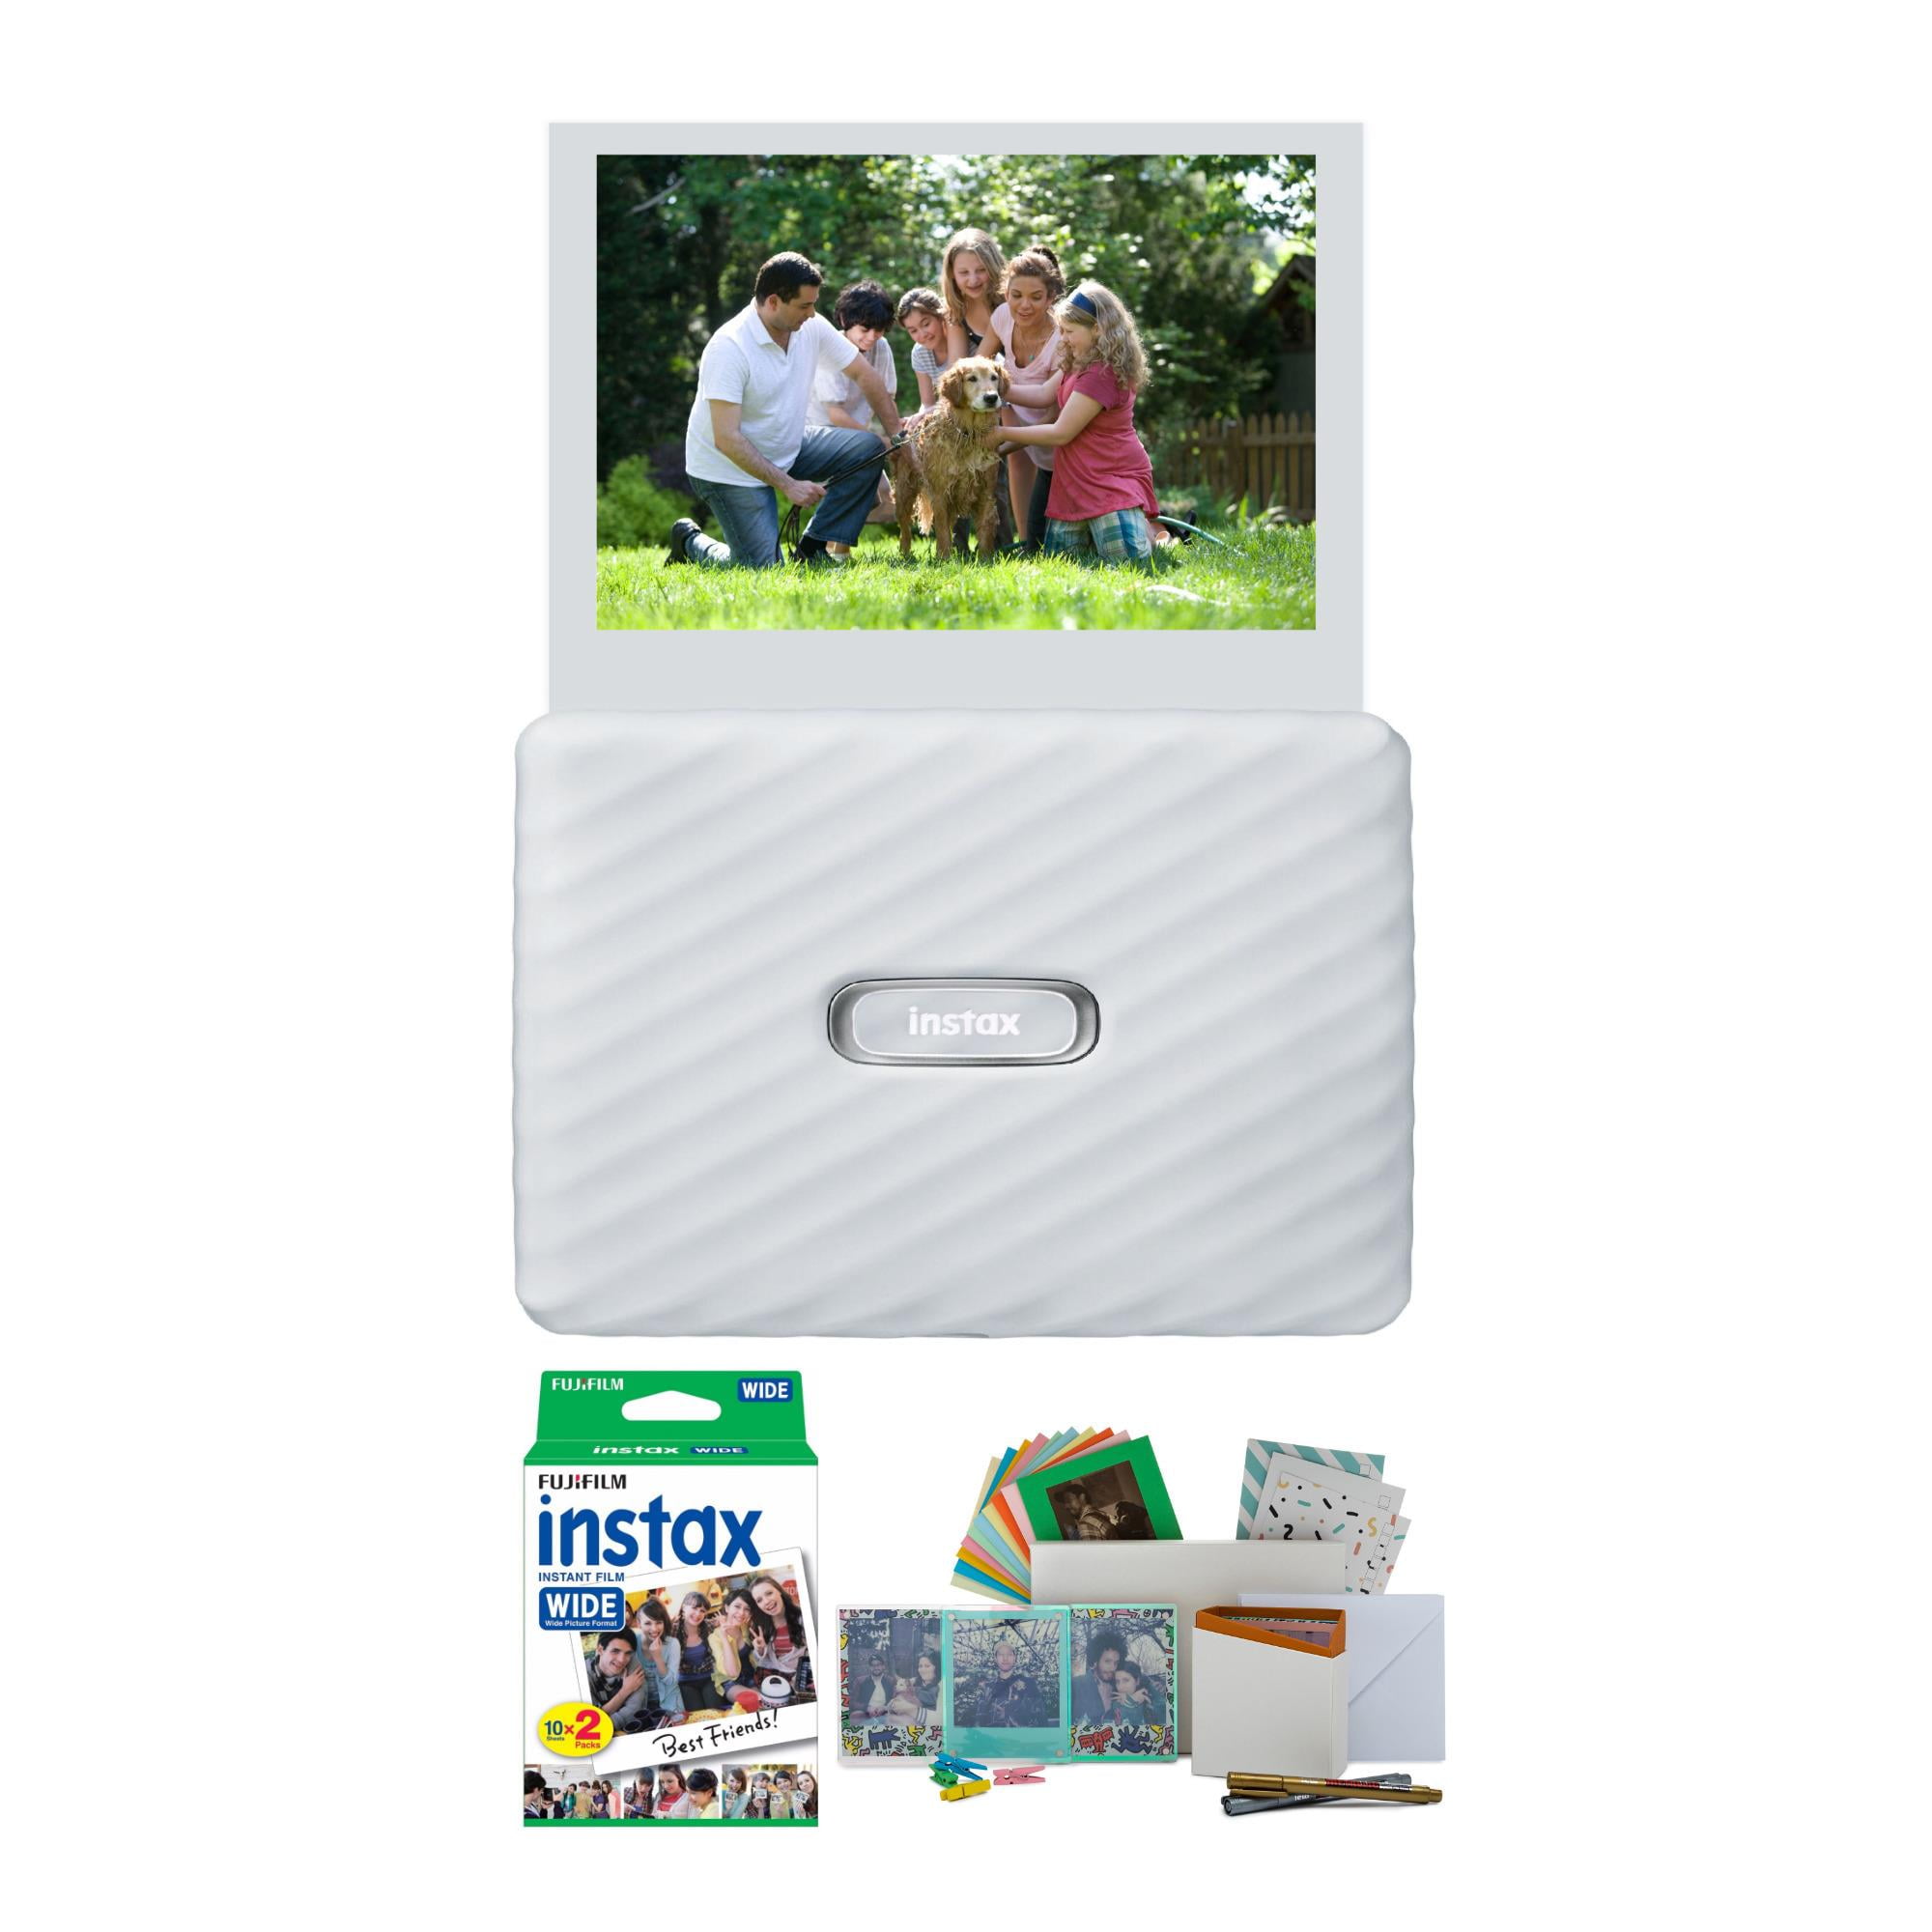 Buy Instax Instax Wide Smartphone Printer Online